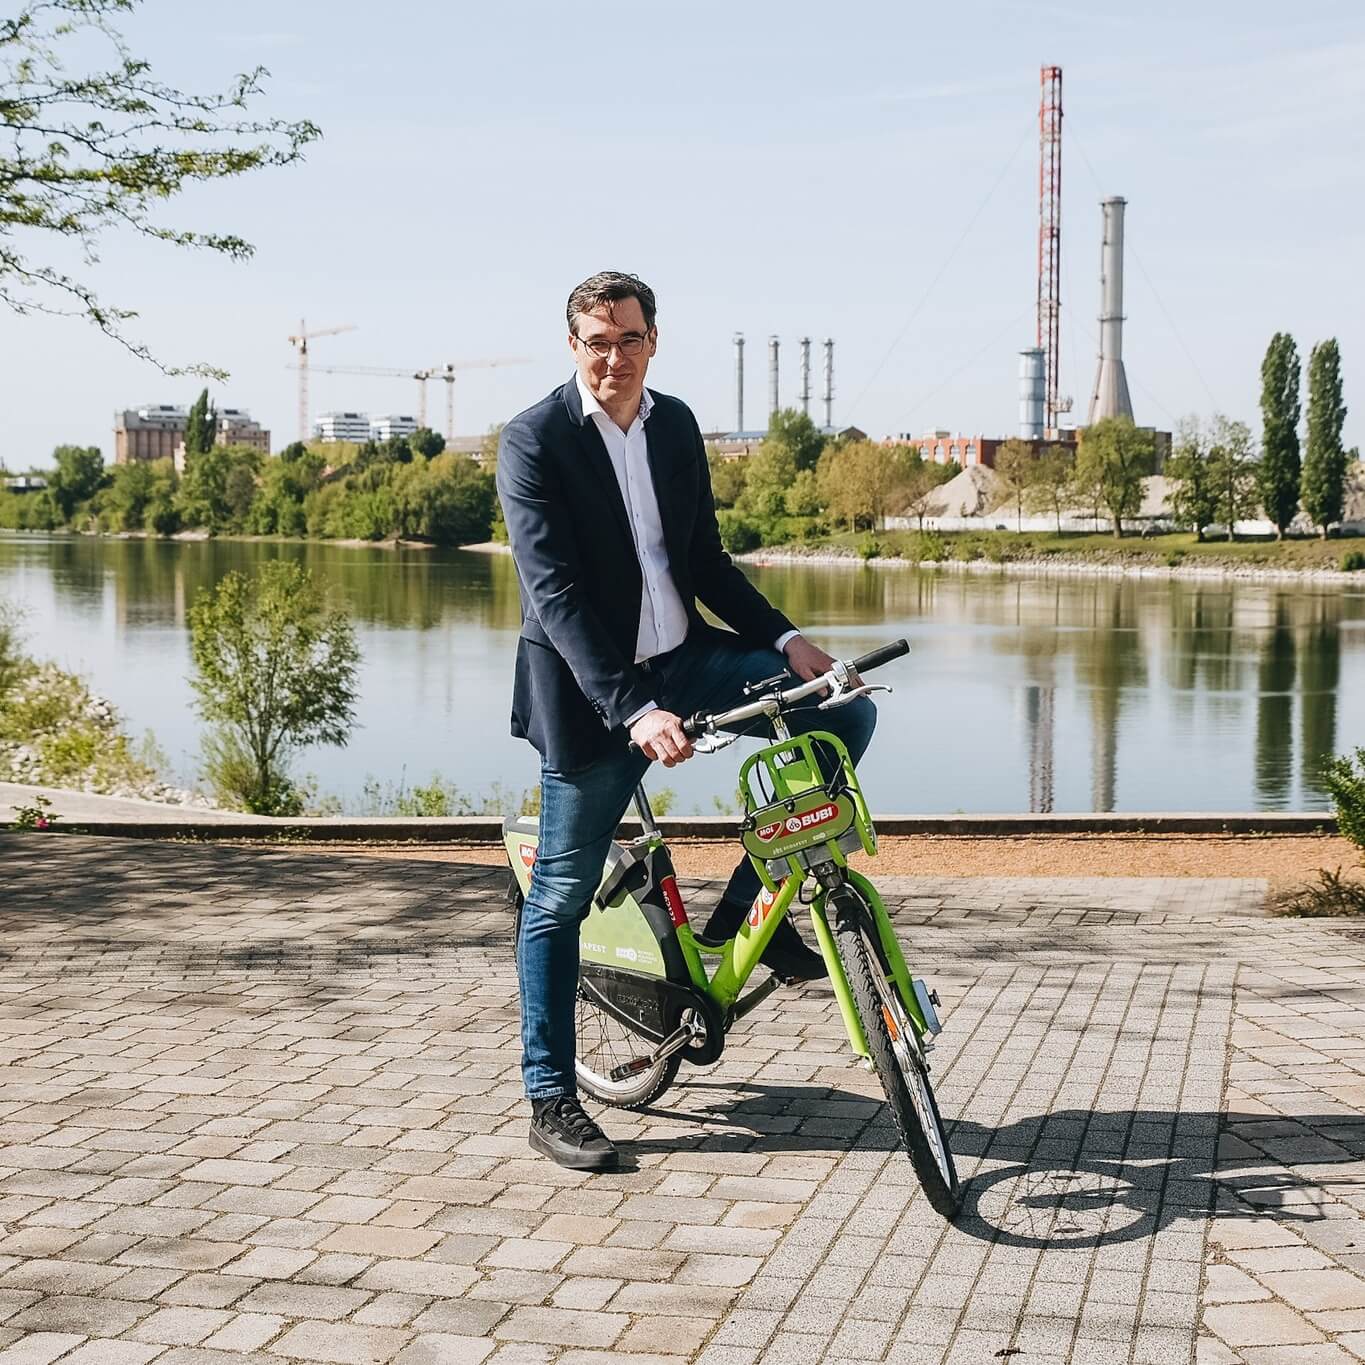 Public E-Bike Plan for Budapest Revealed